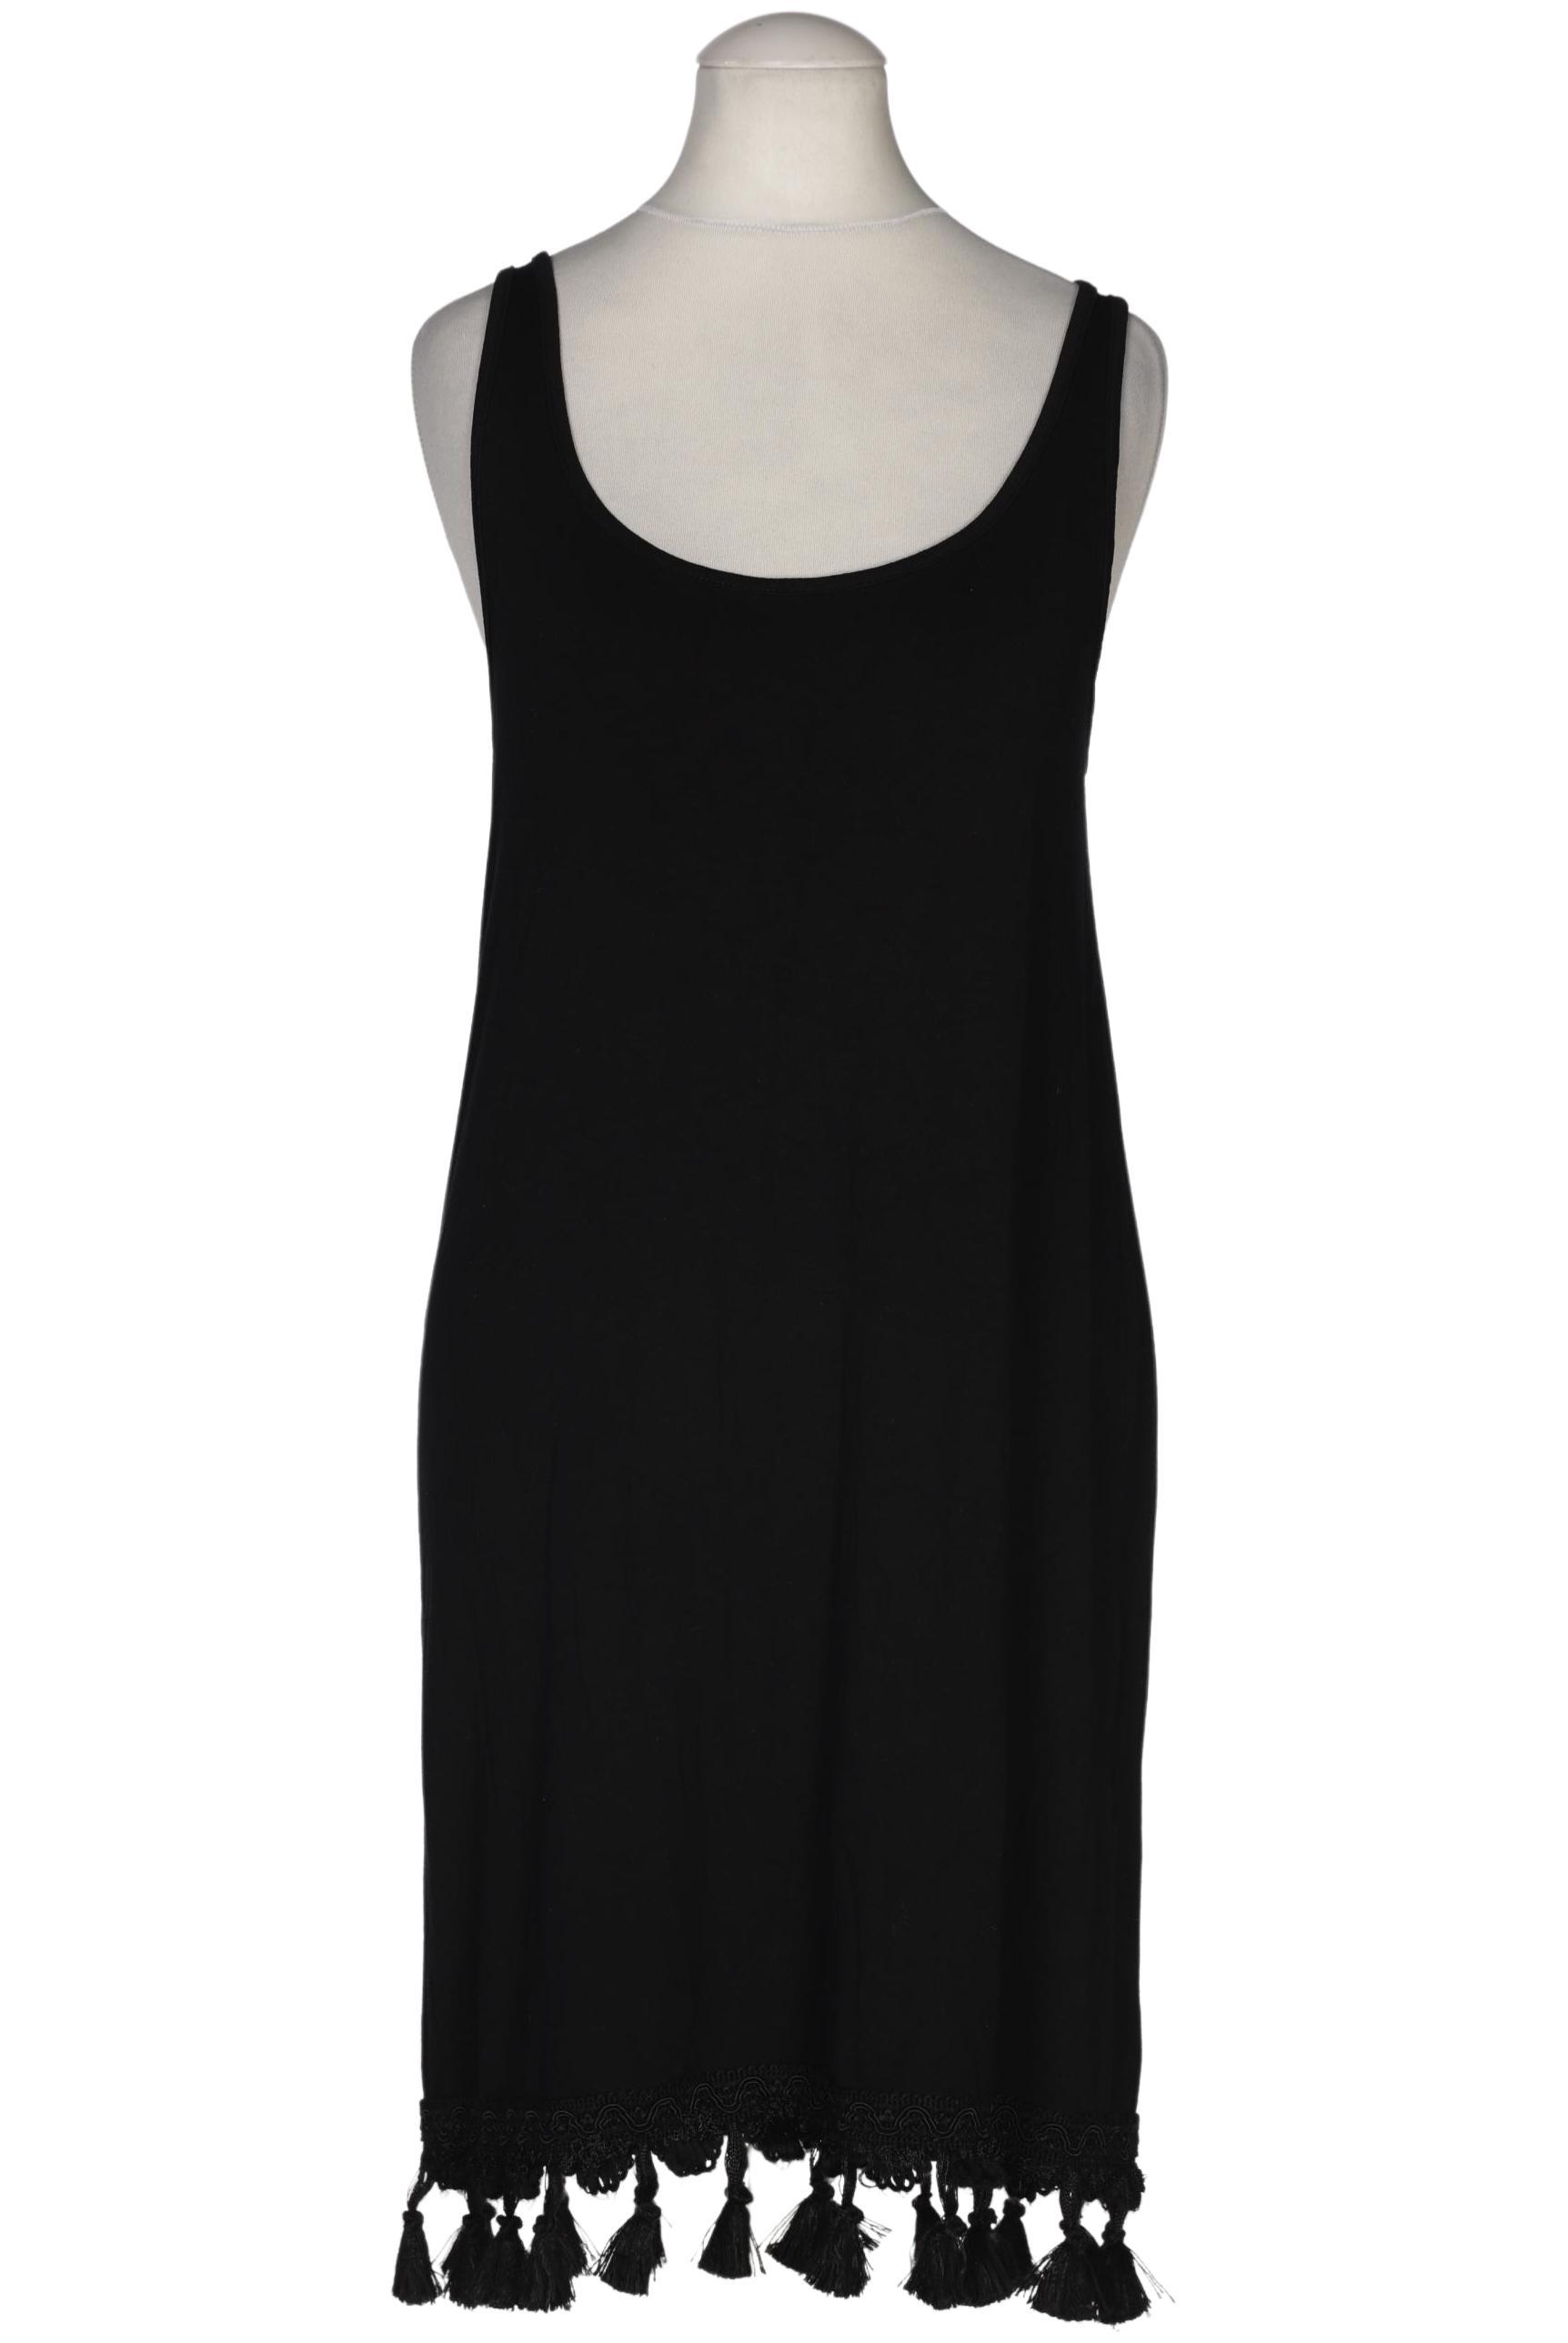 asos Damen Kleid, schwarz, Gr. 34 von asos